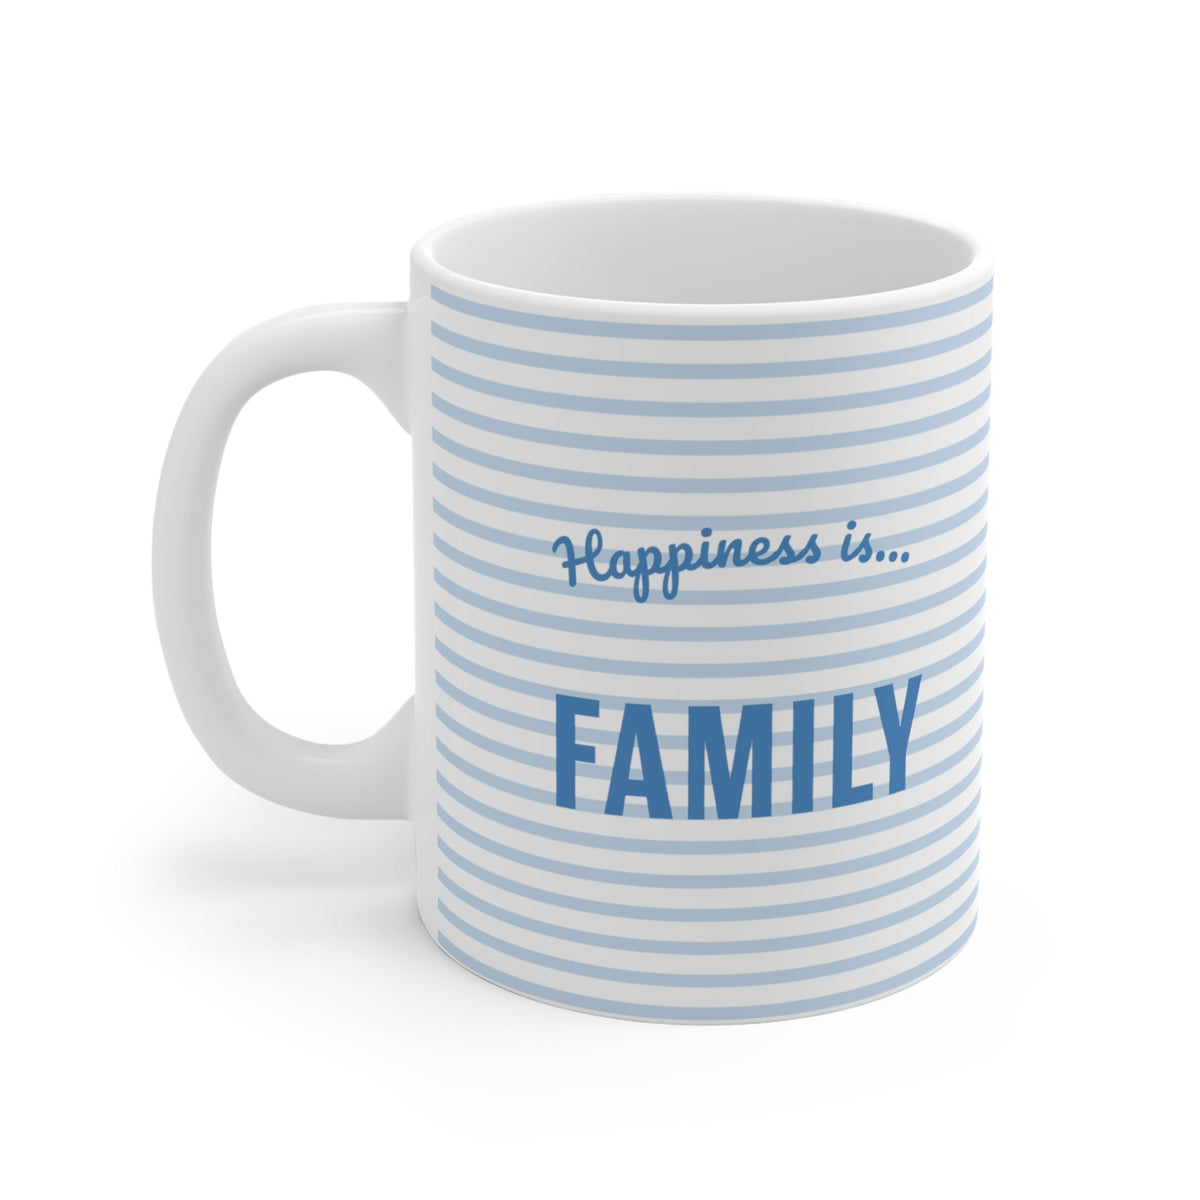 Mug: Family